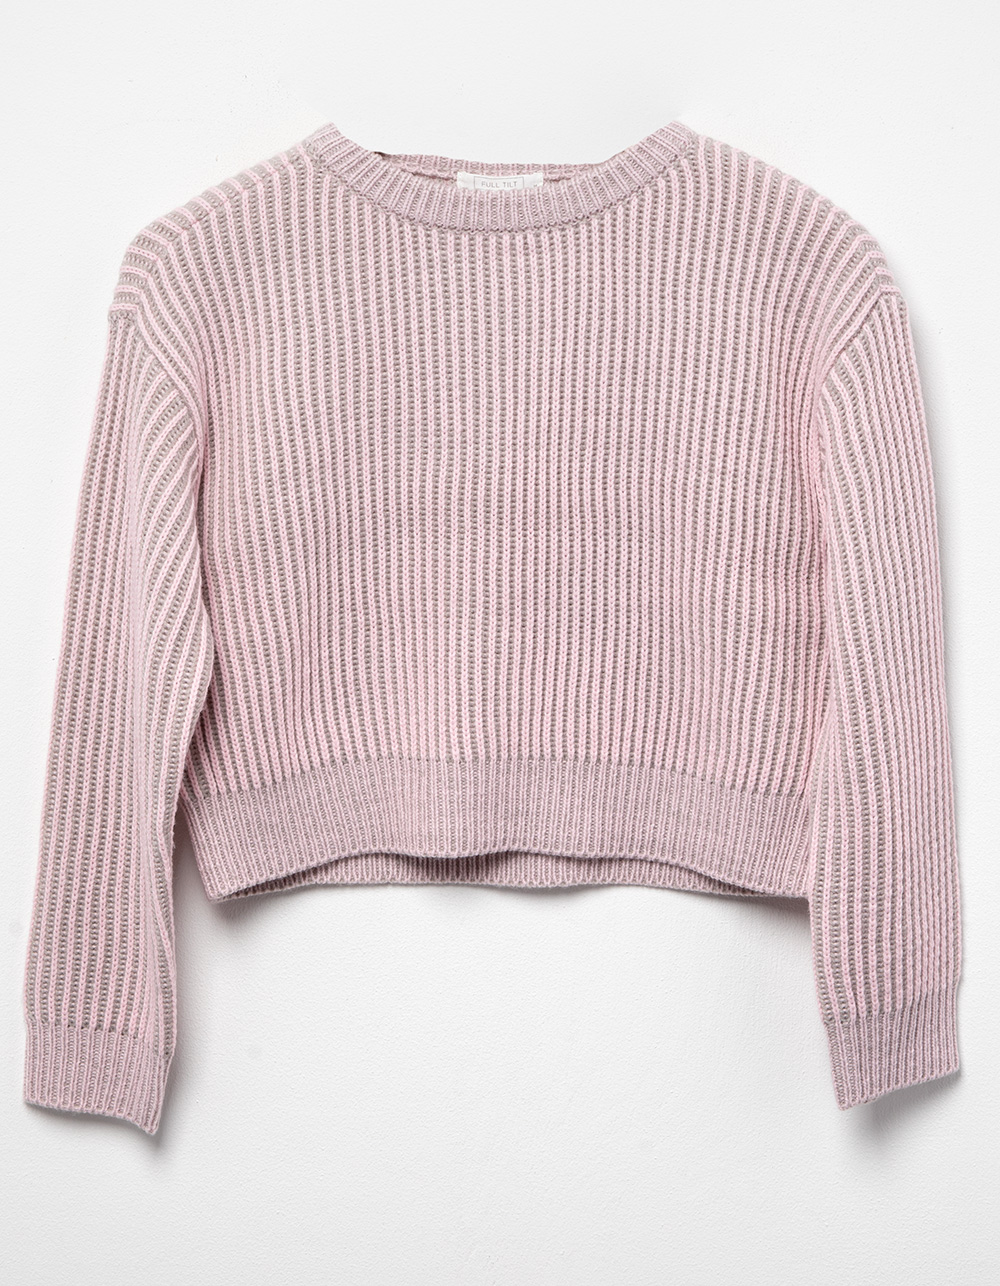 FULL TILT Plated Girls Sweater